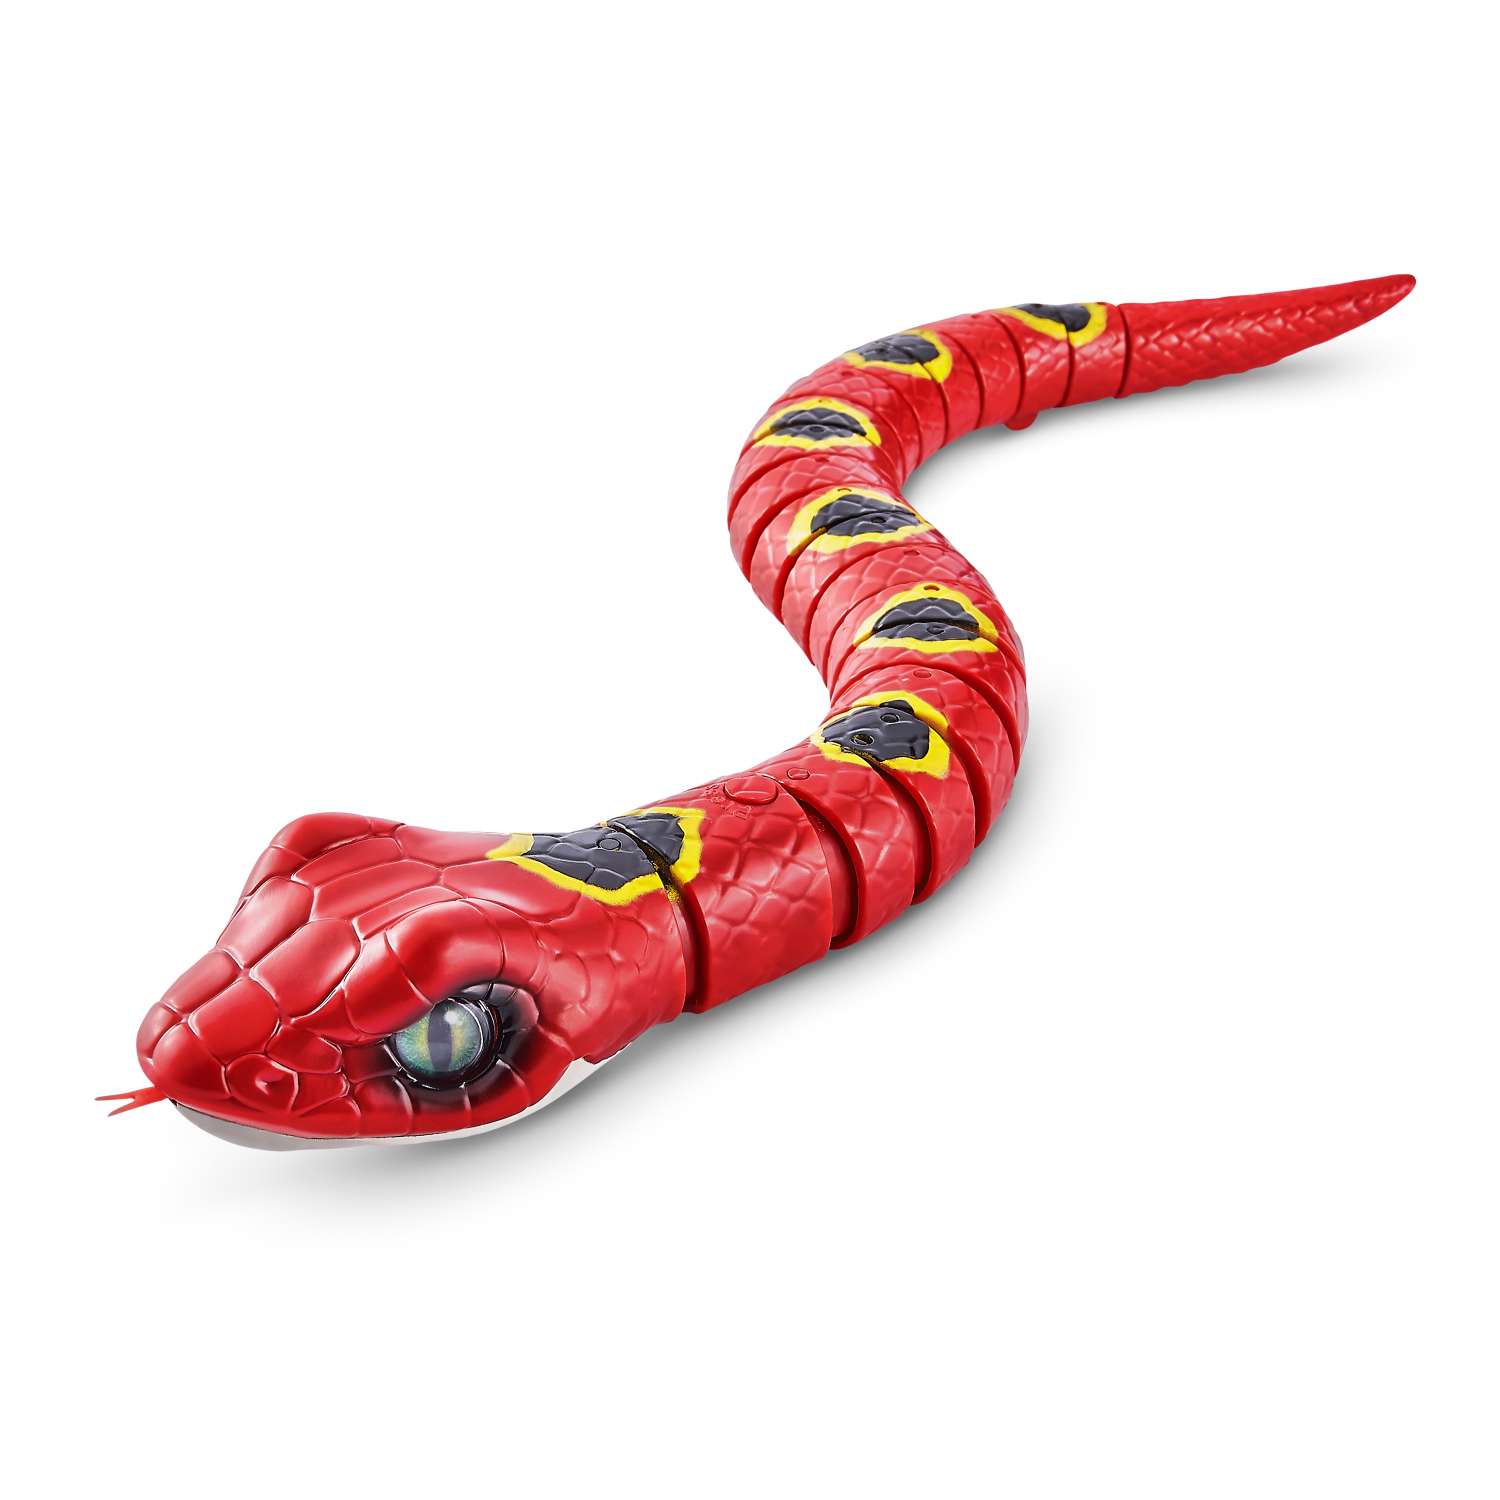 Игрушка Zuru ROBO ALIVE Змея Красная 7150А - фото 1